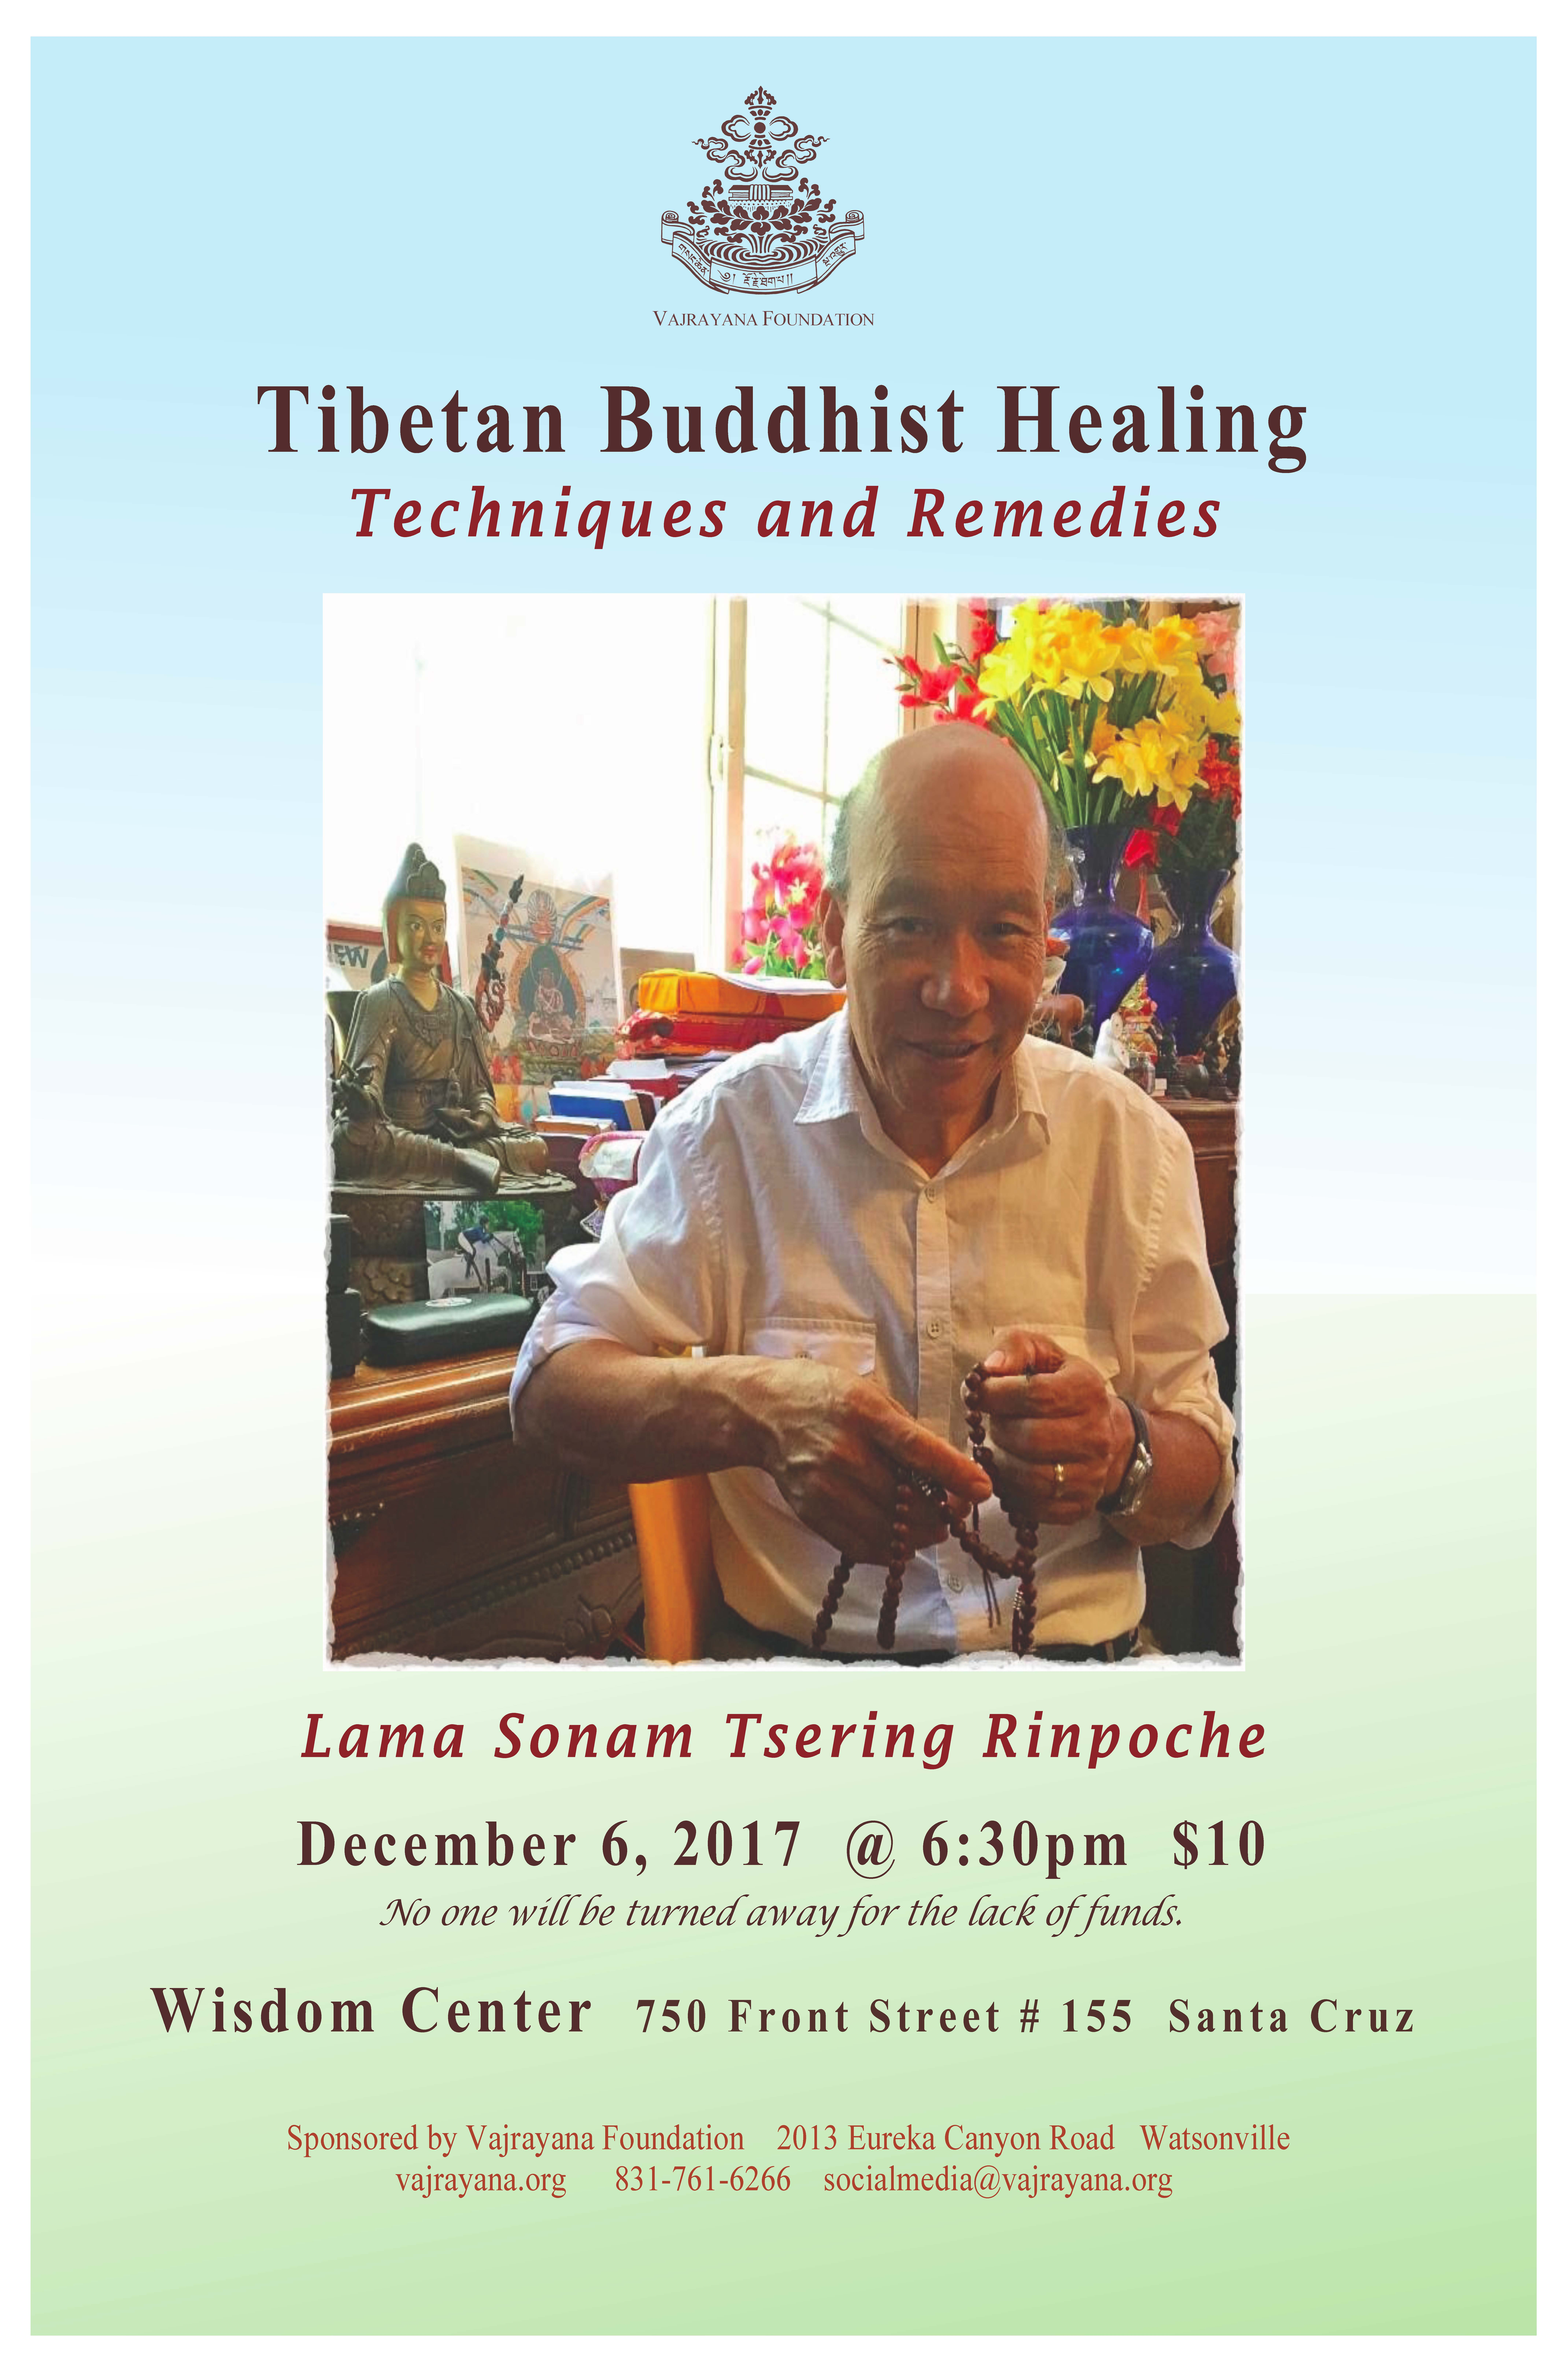 Tibetan Buddhist Healing Talk